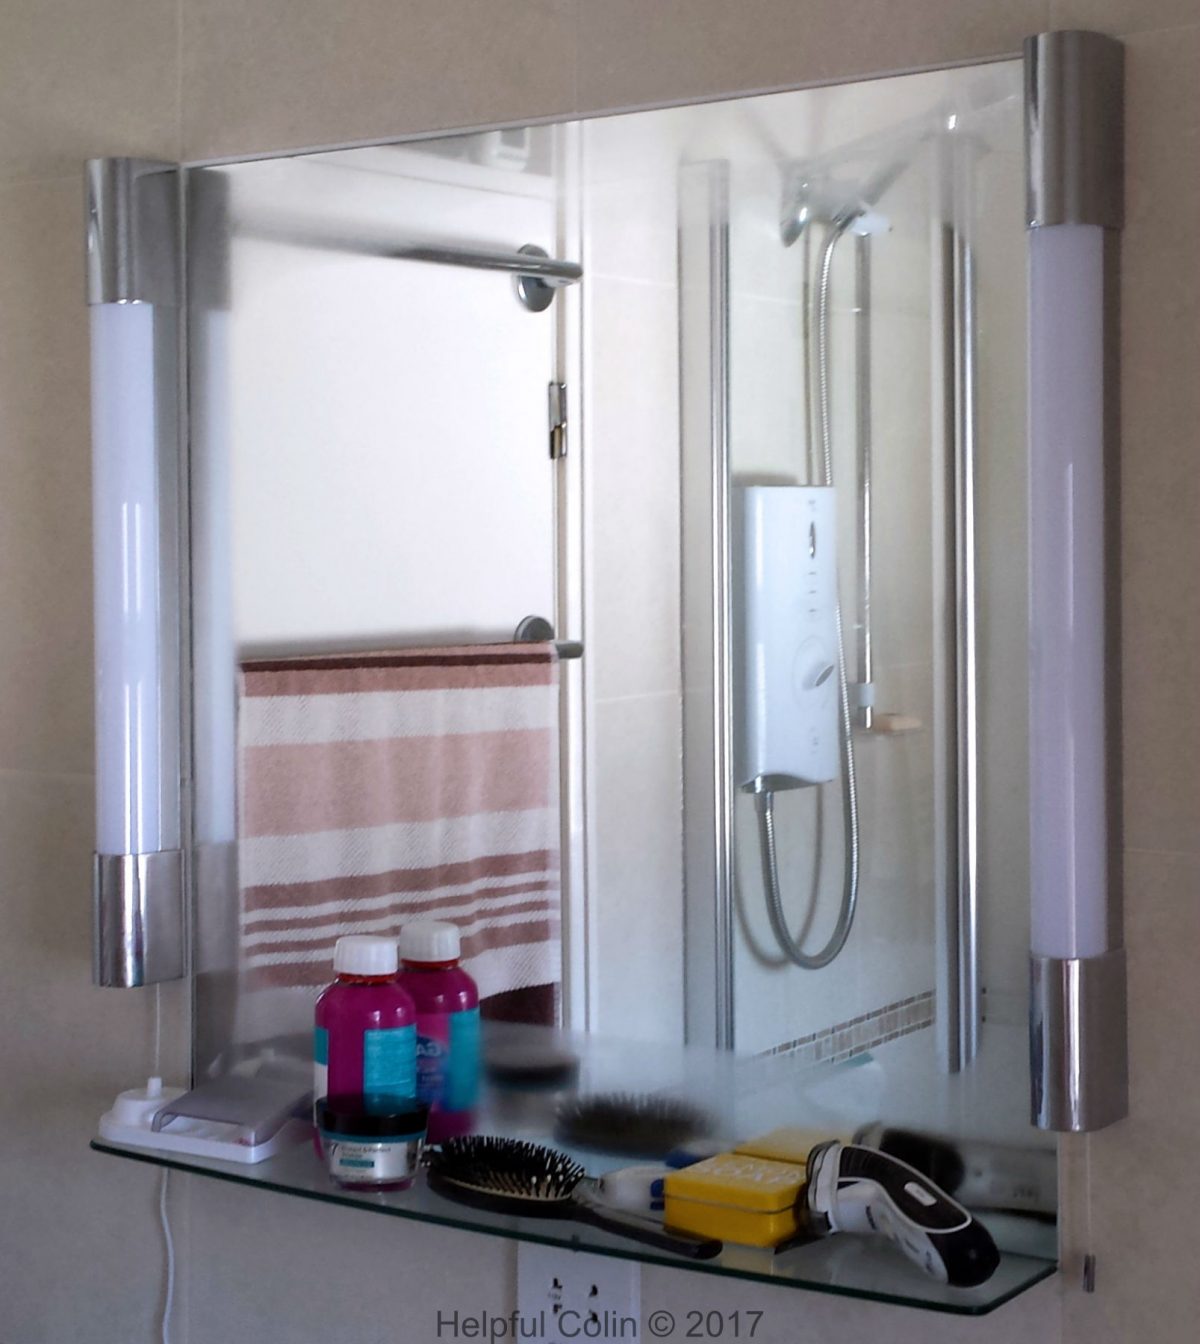 Making A Condensation-free Bathroom Mirror